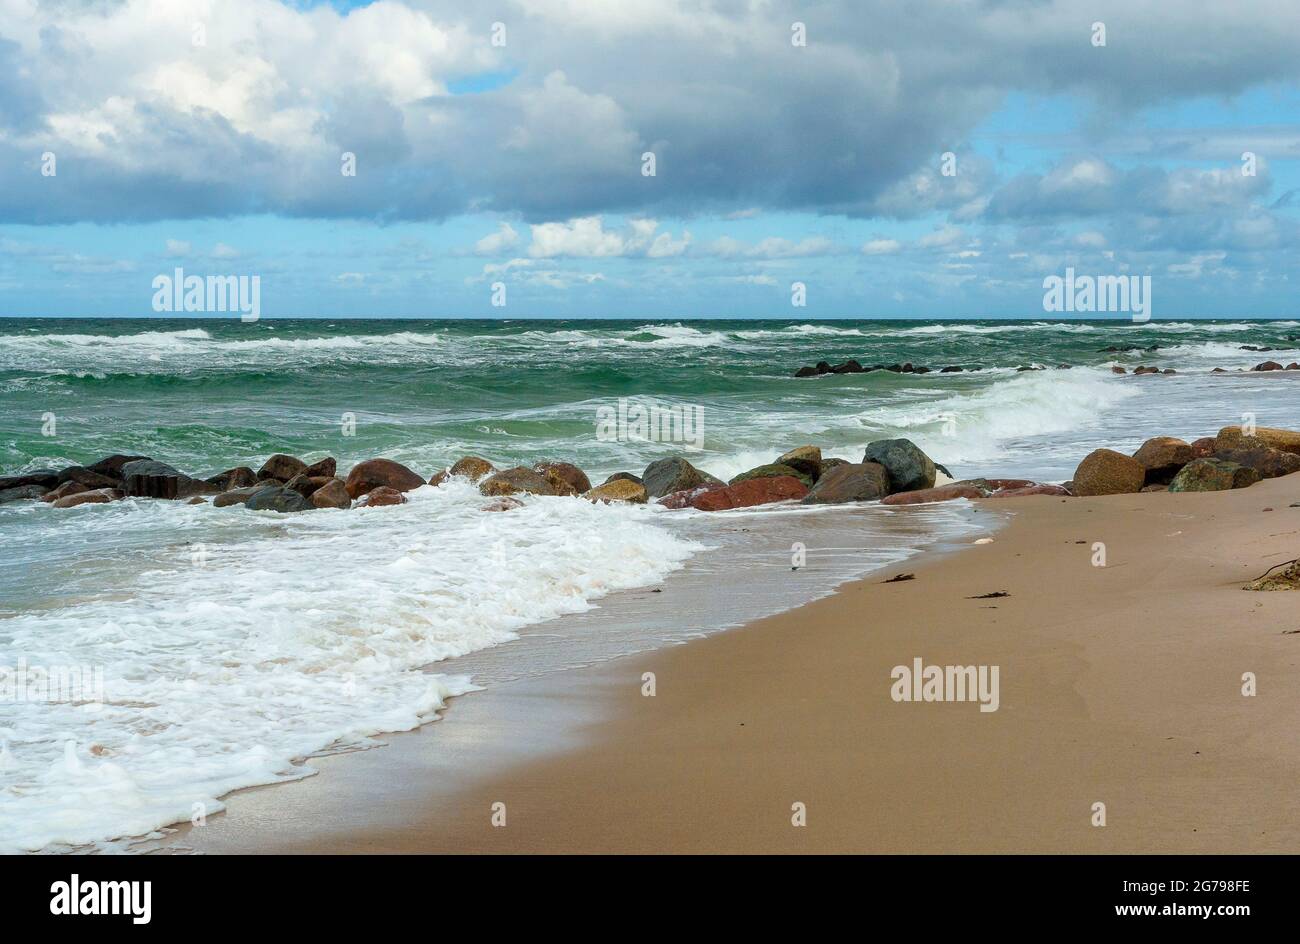 Danimarca, isola della Zelanda, Gribskov-Tisvilde, Tisvildeleje, la zona costiera nel nord di Tisvilde, spiaggia sabbiosa della più grande isola del Mar Baltico, l'isola di Sjaelland = isola della Zelanda. Foto Stock